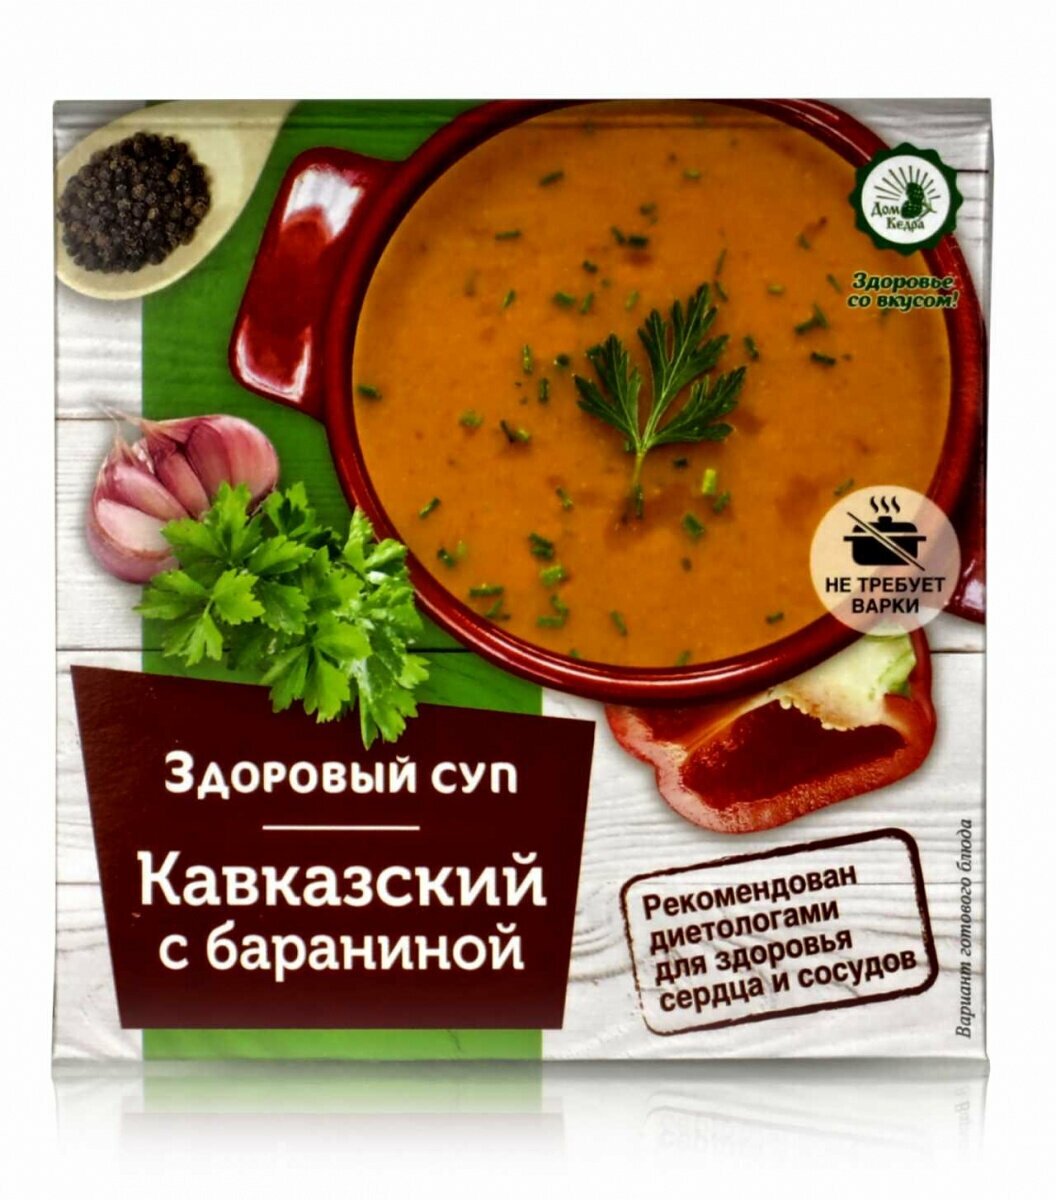 Суп быстрого приготовления "Кавказский" с бараниной 30г.